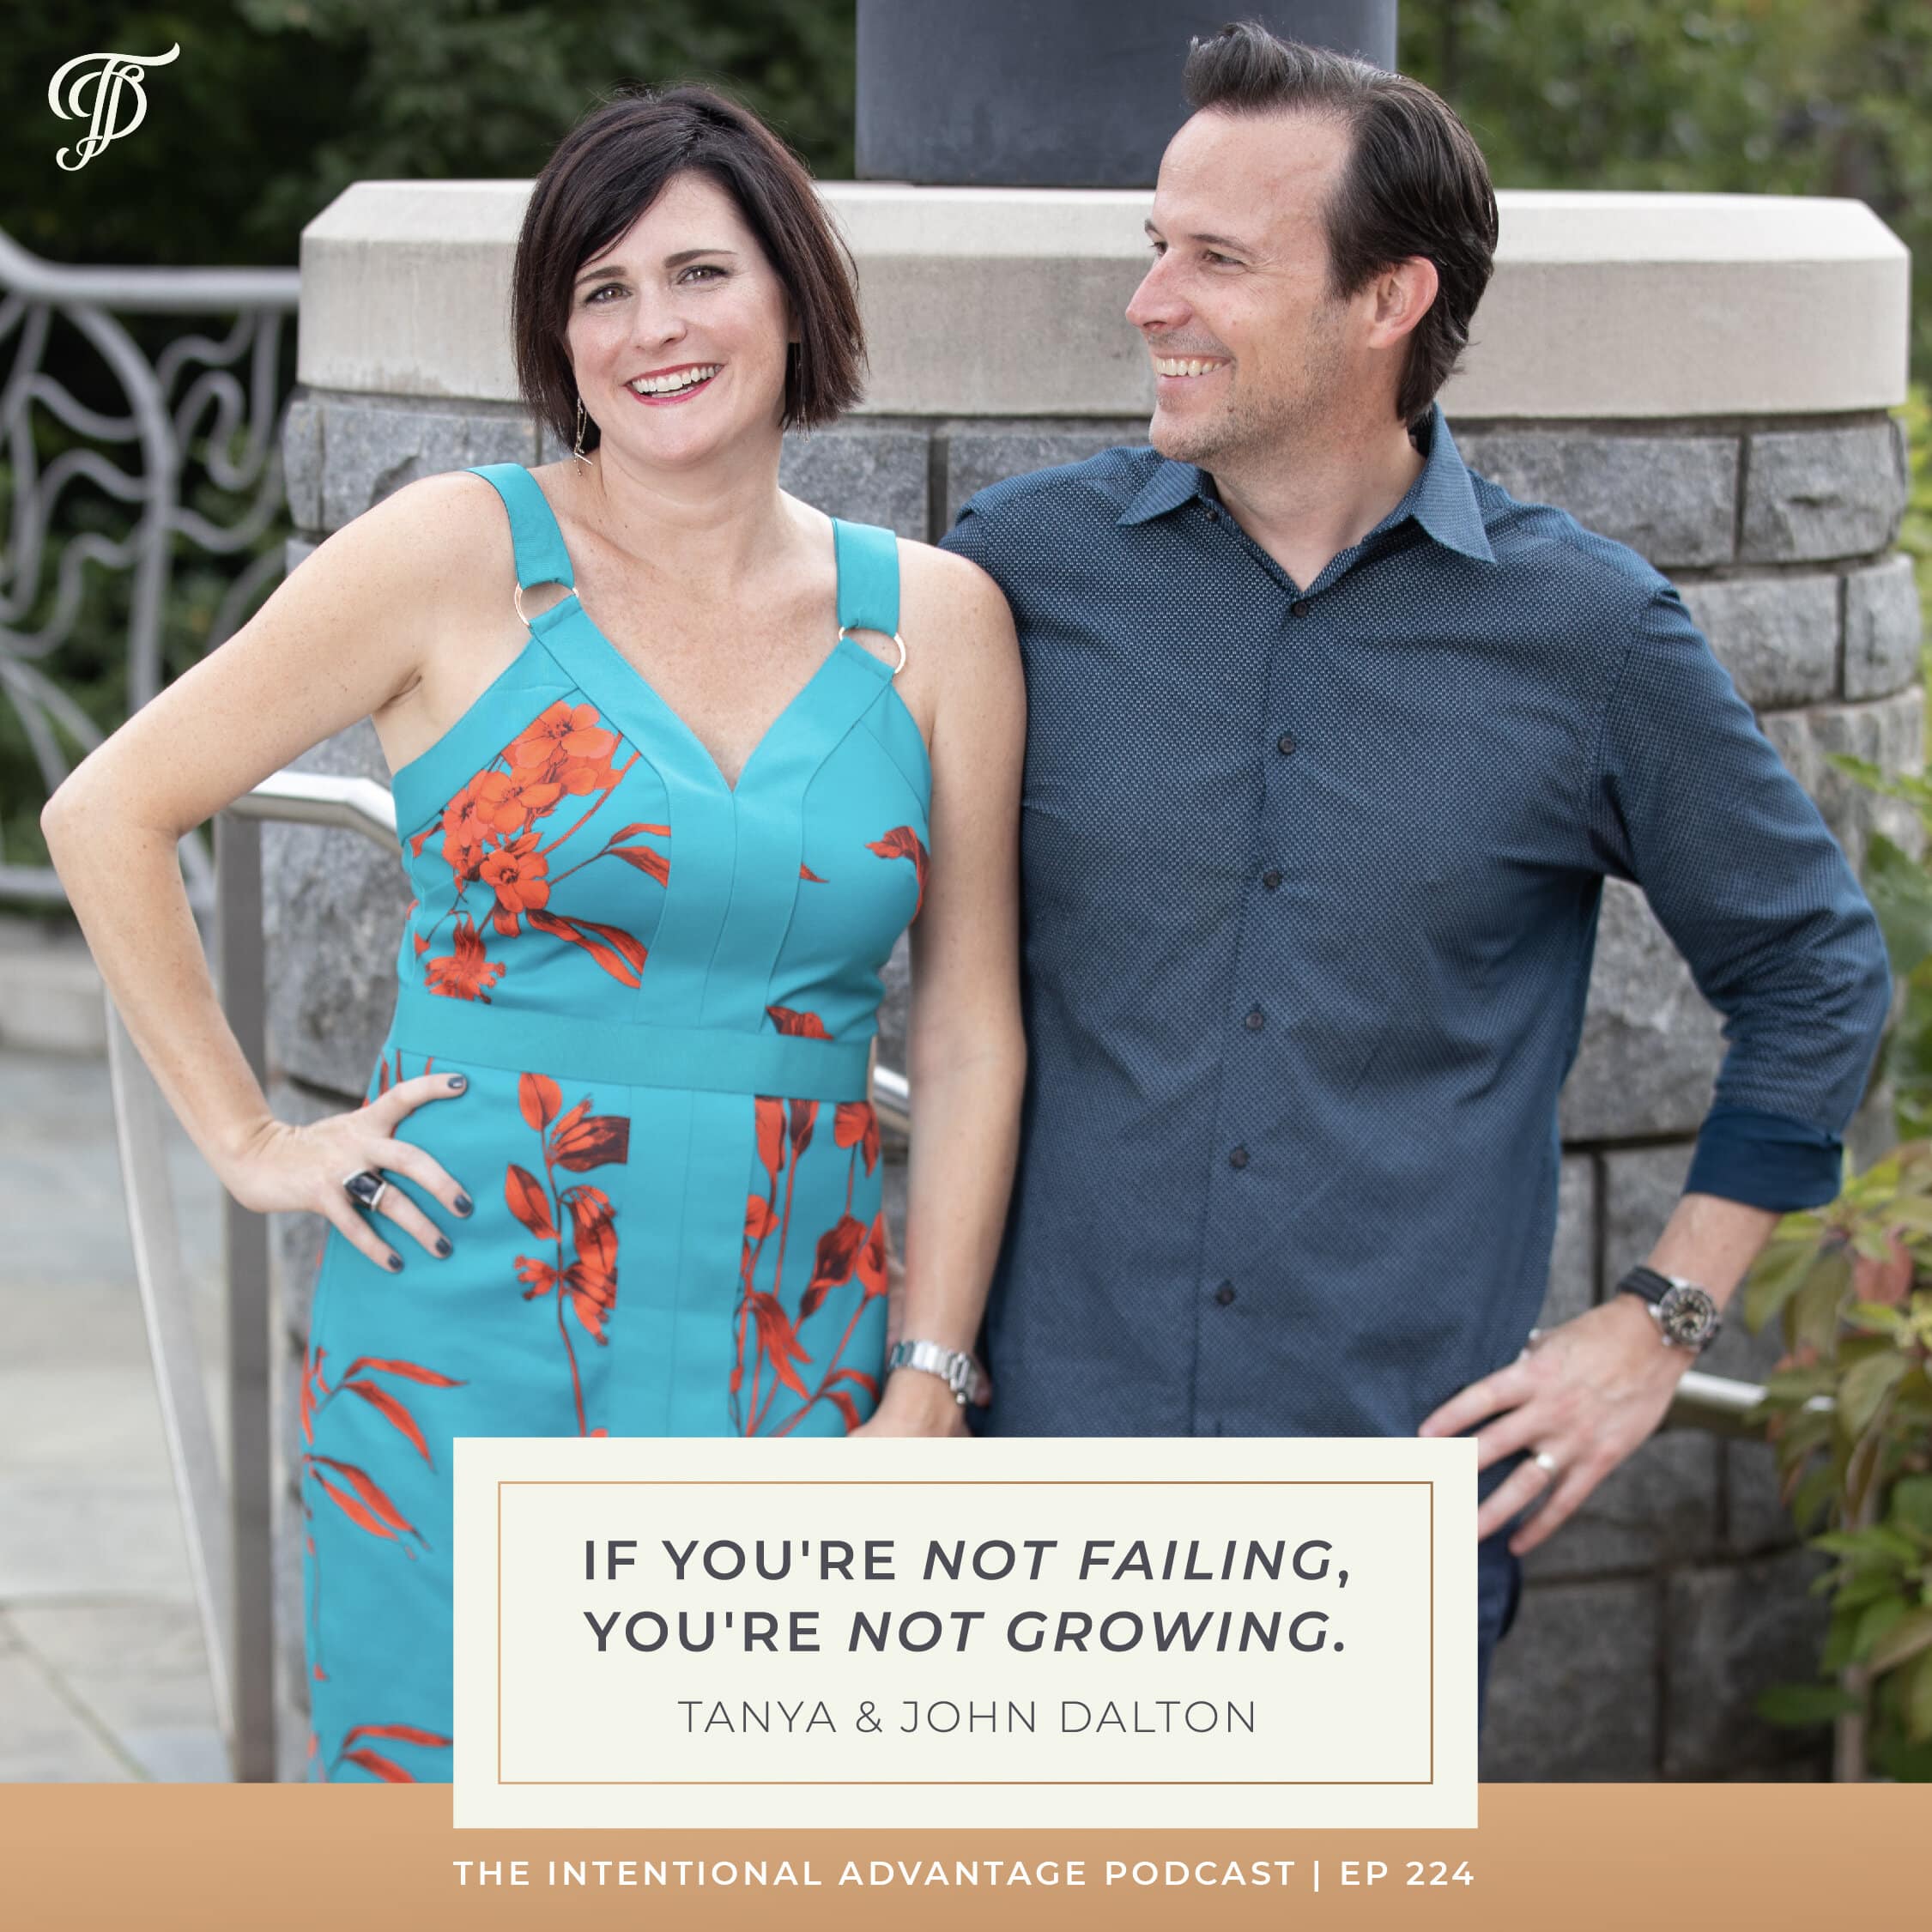 Tanya Dalton quote on failure